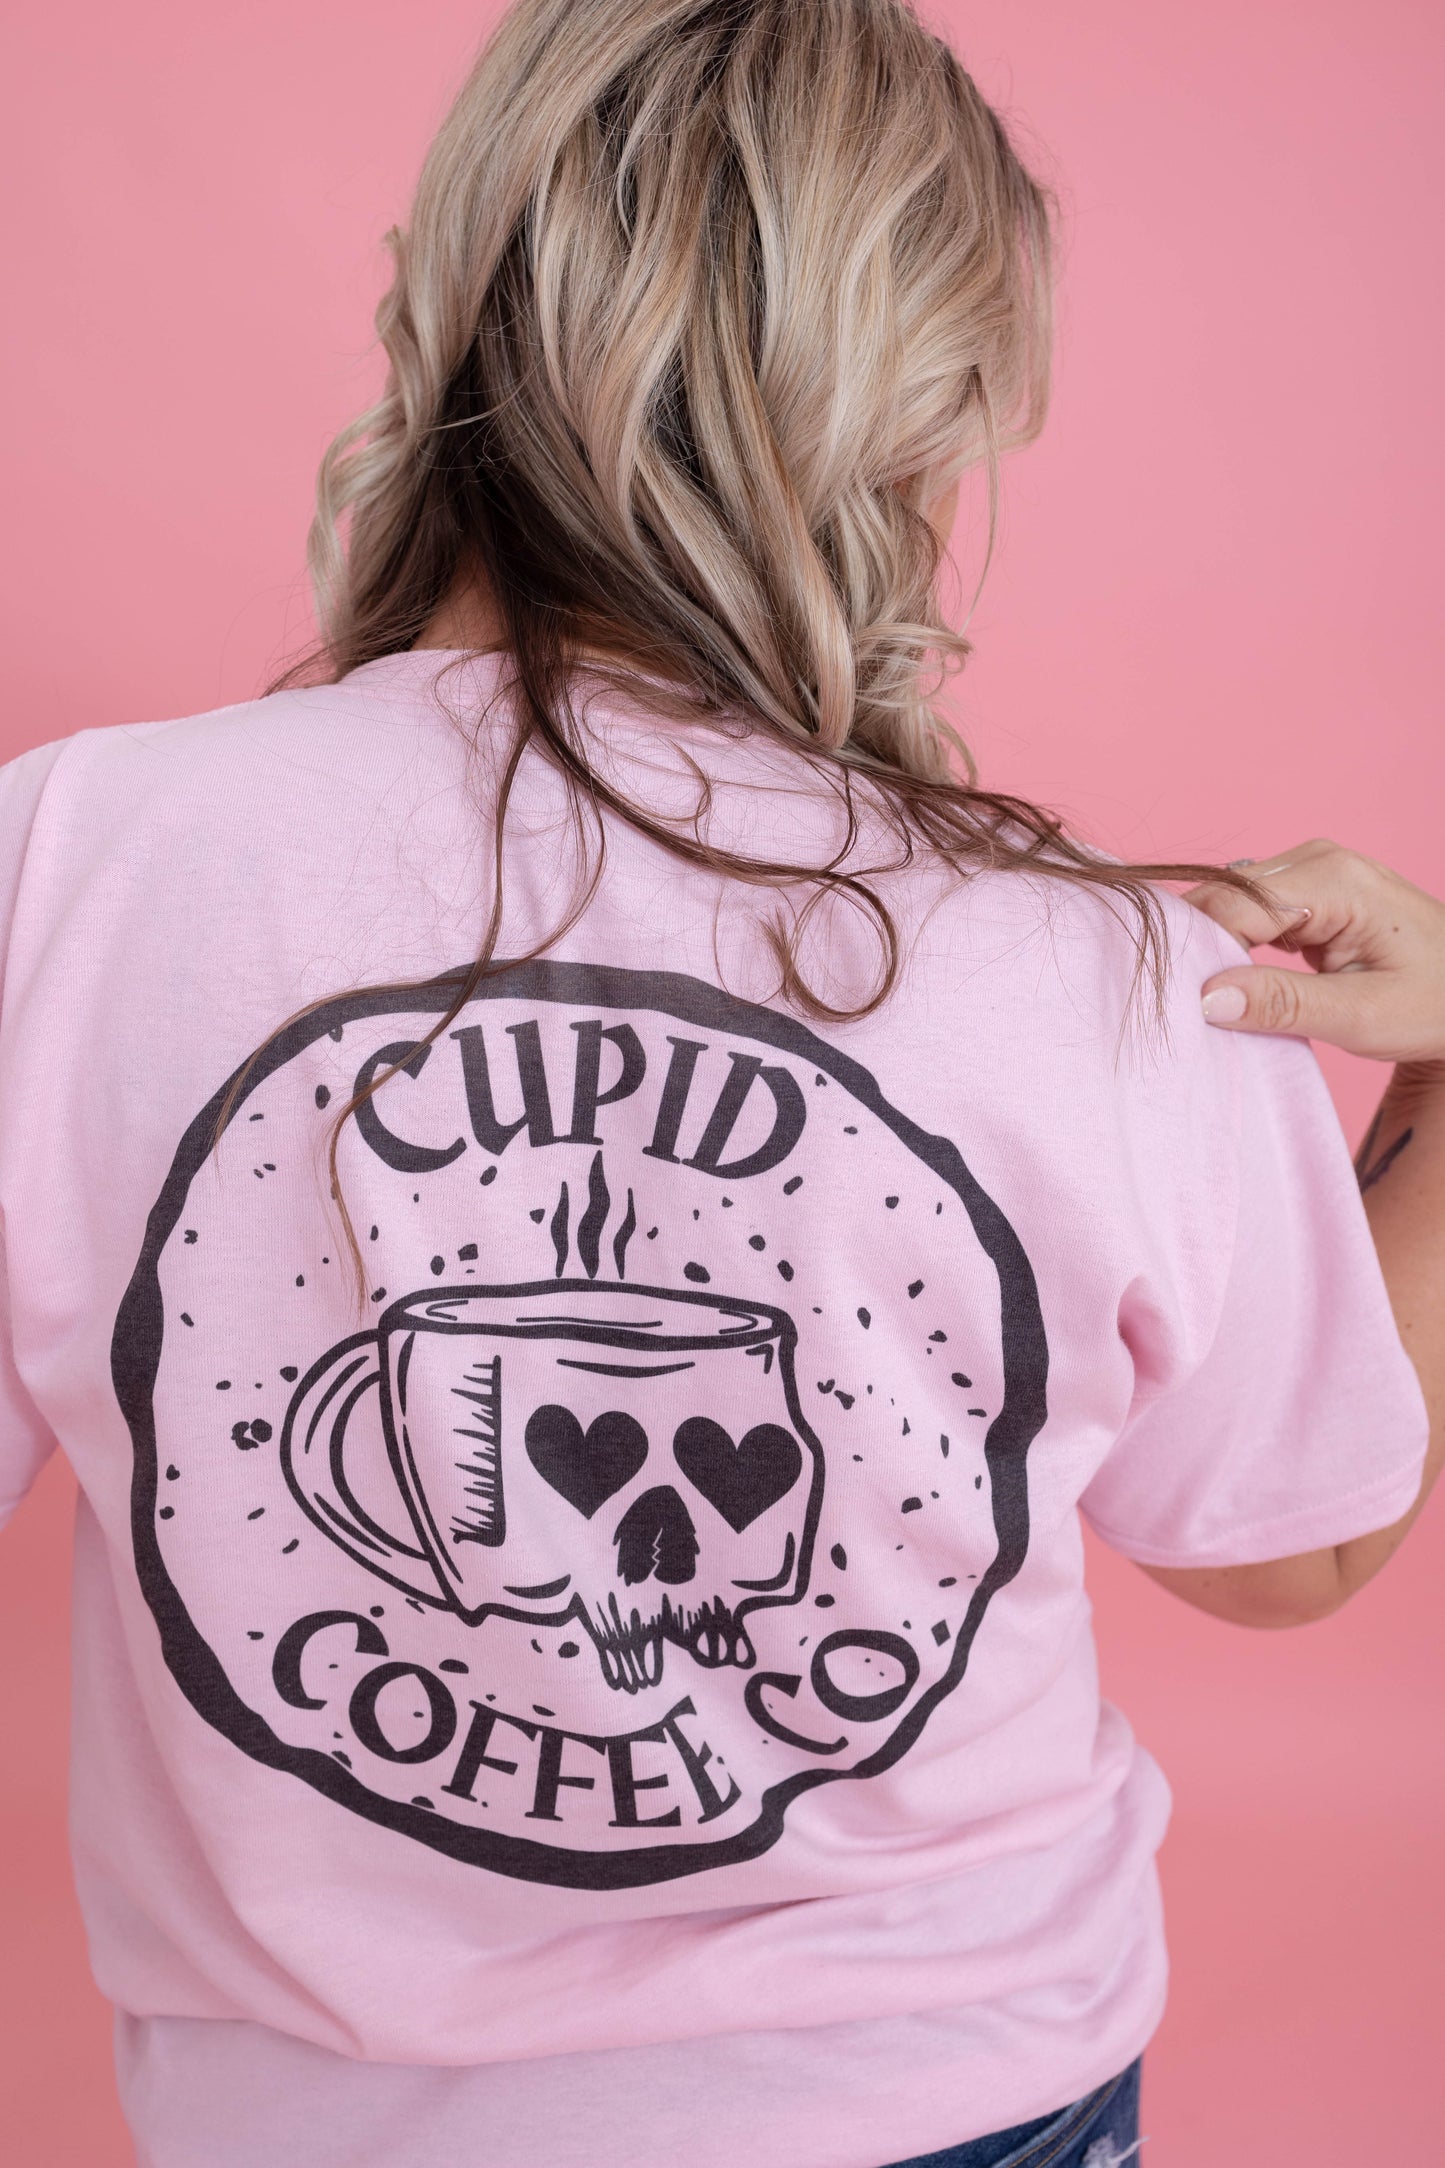 Cupid Coffee Company